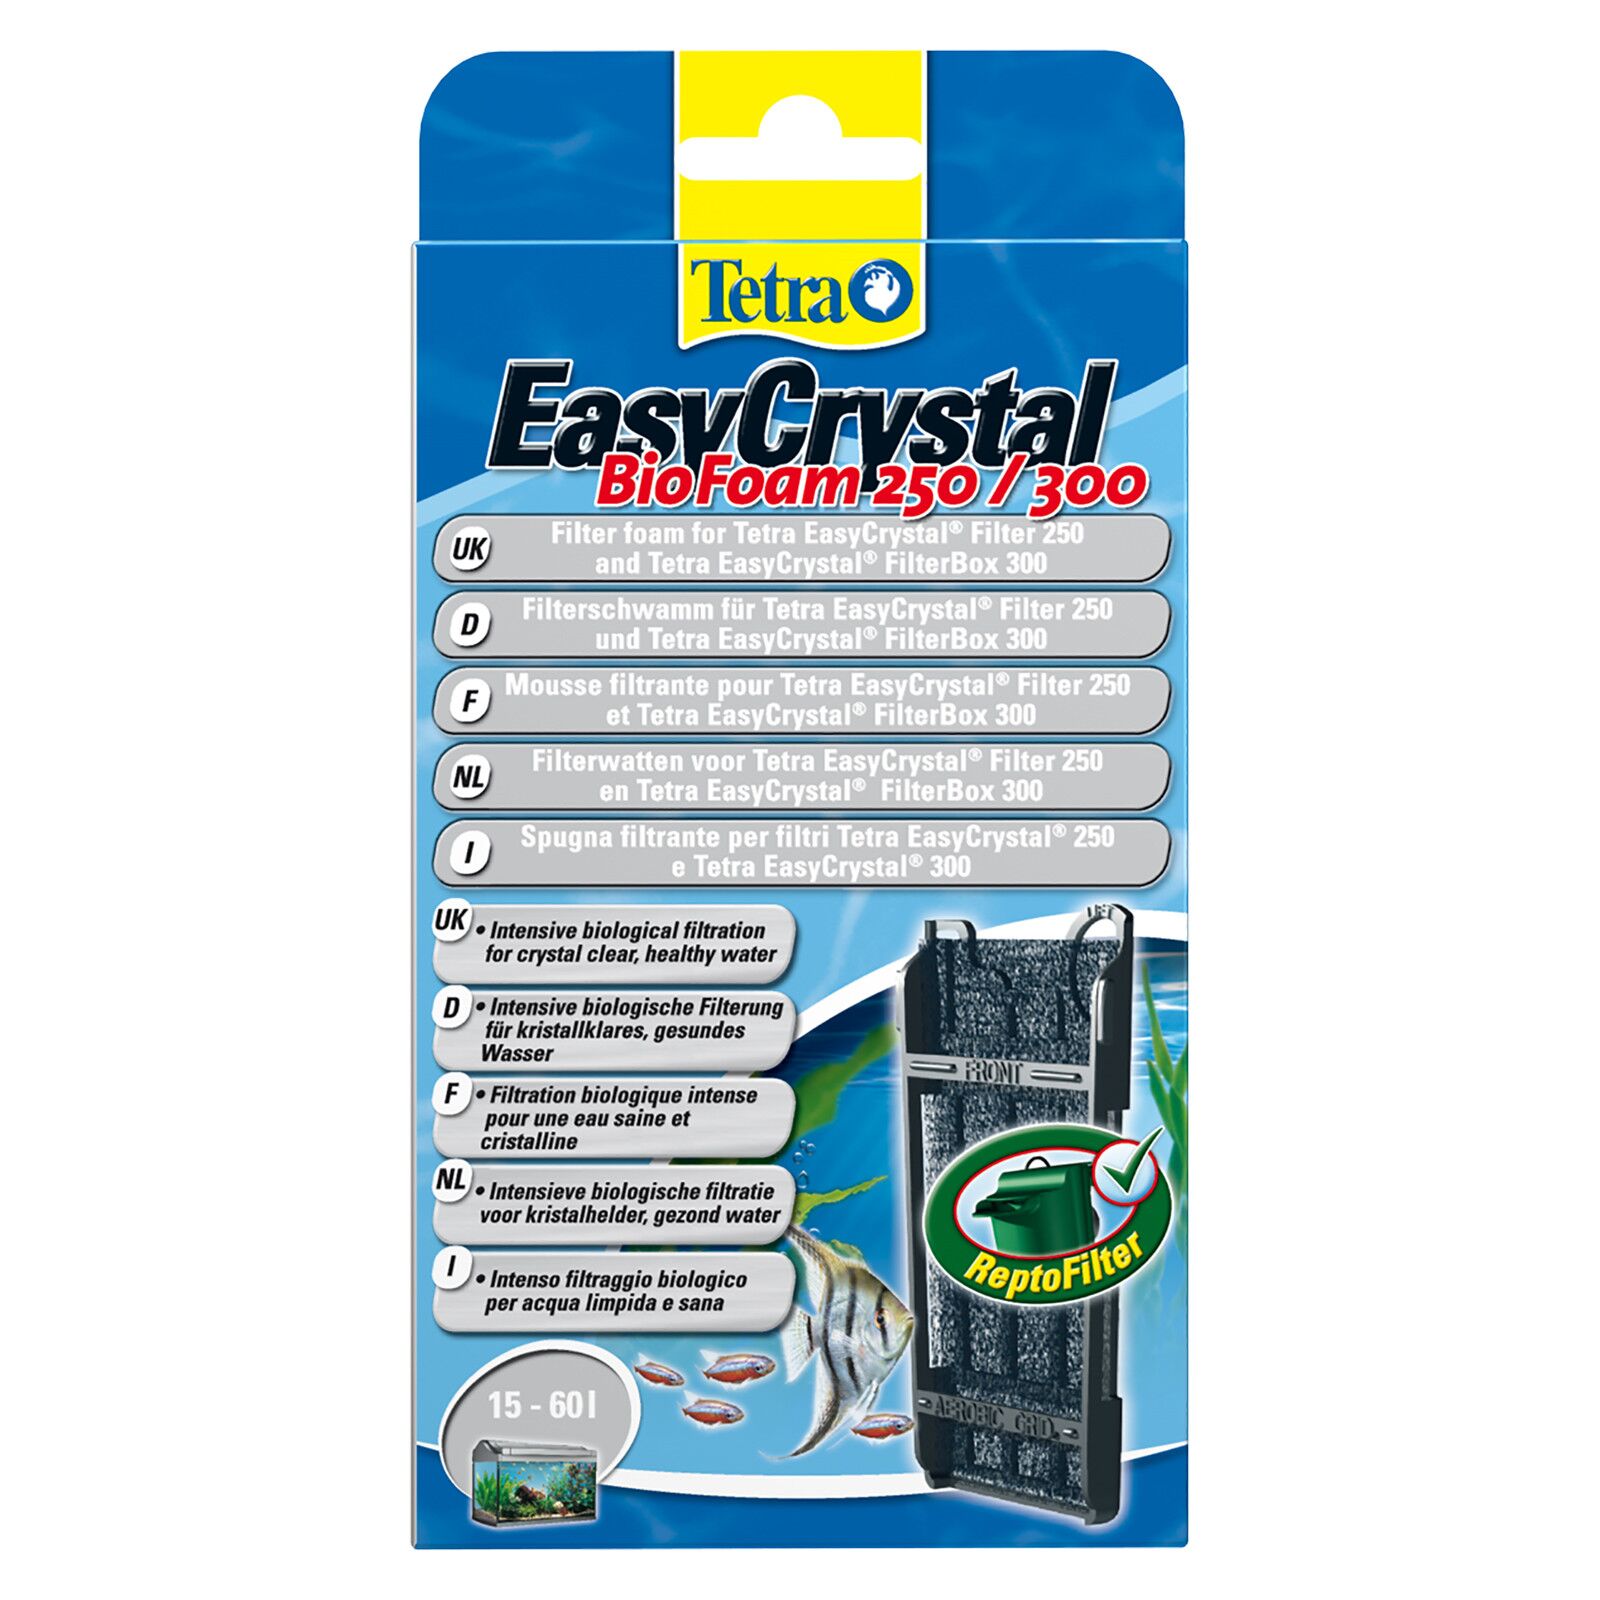 Tetra - EasyCrystal Filter BioFoam 250/300